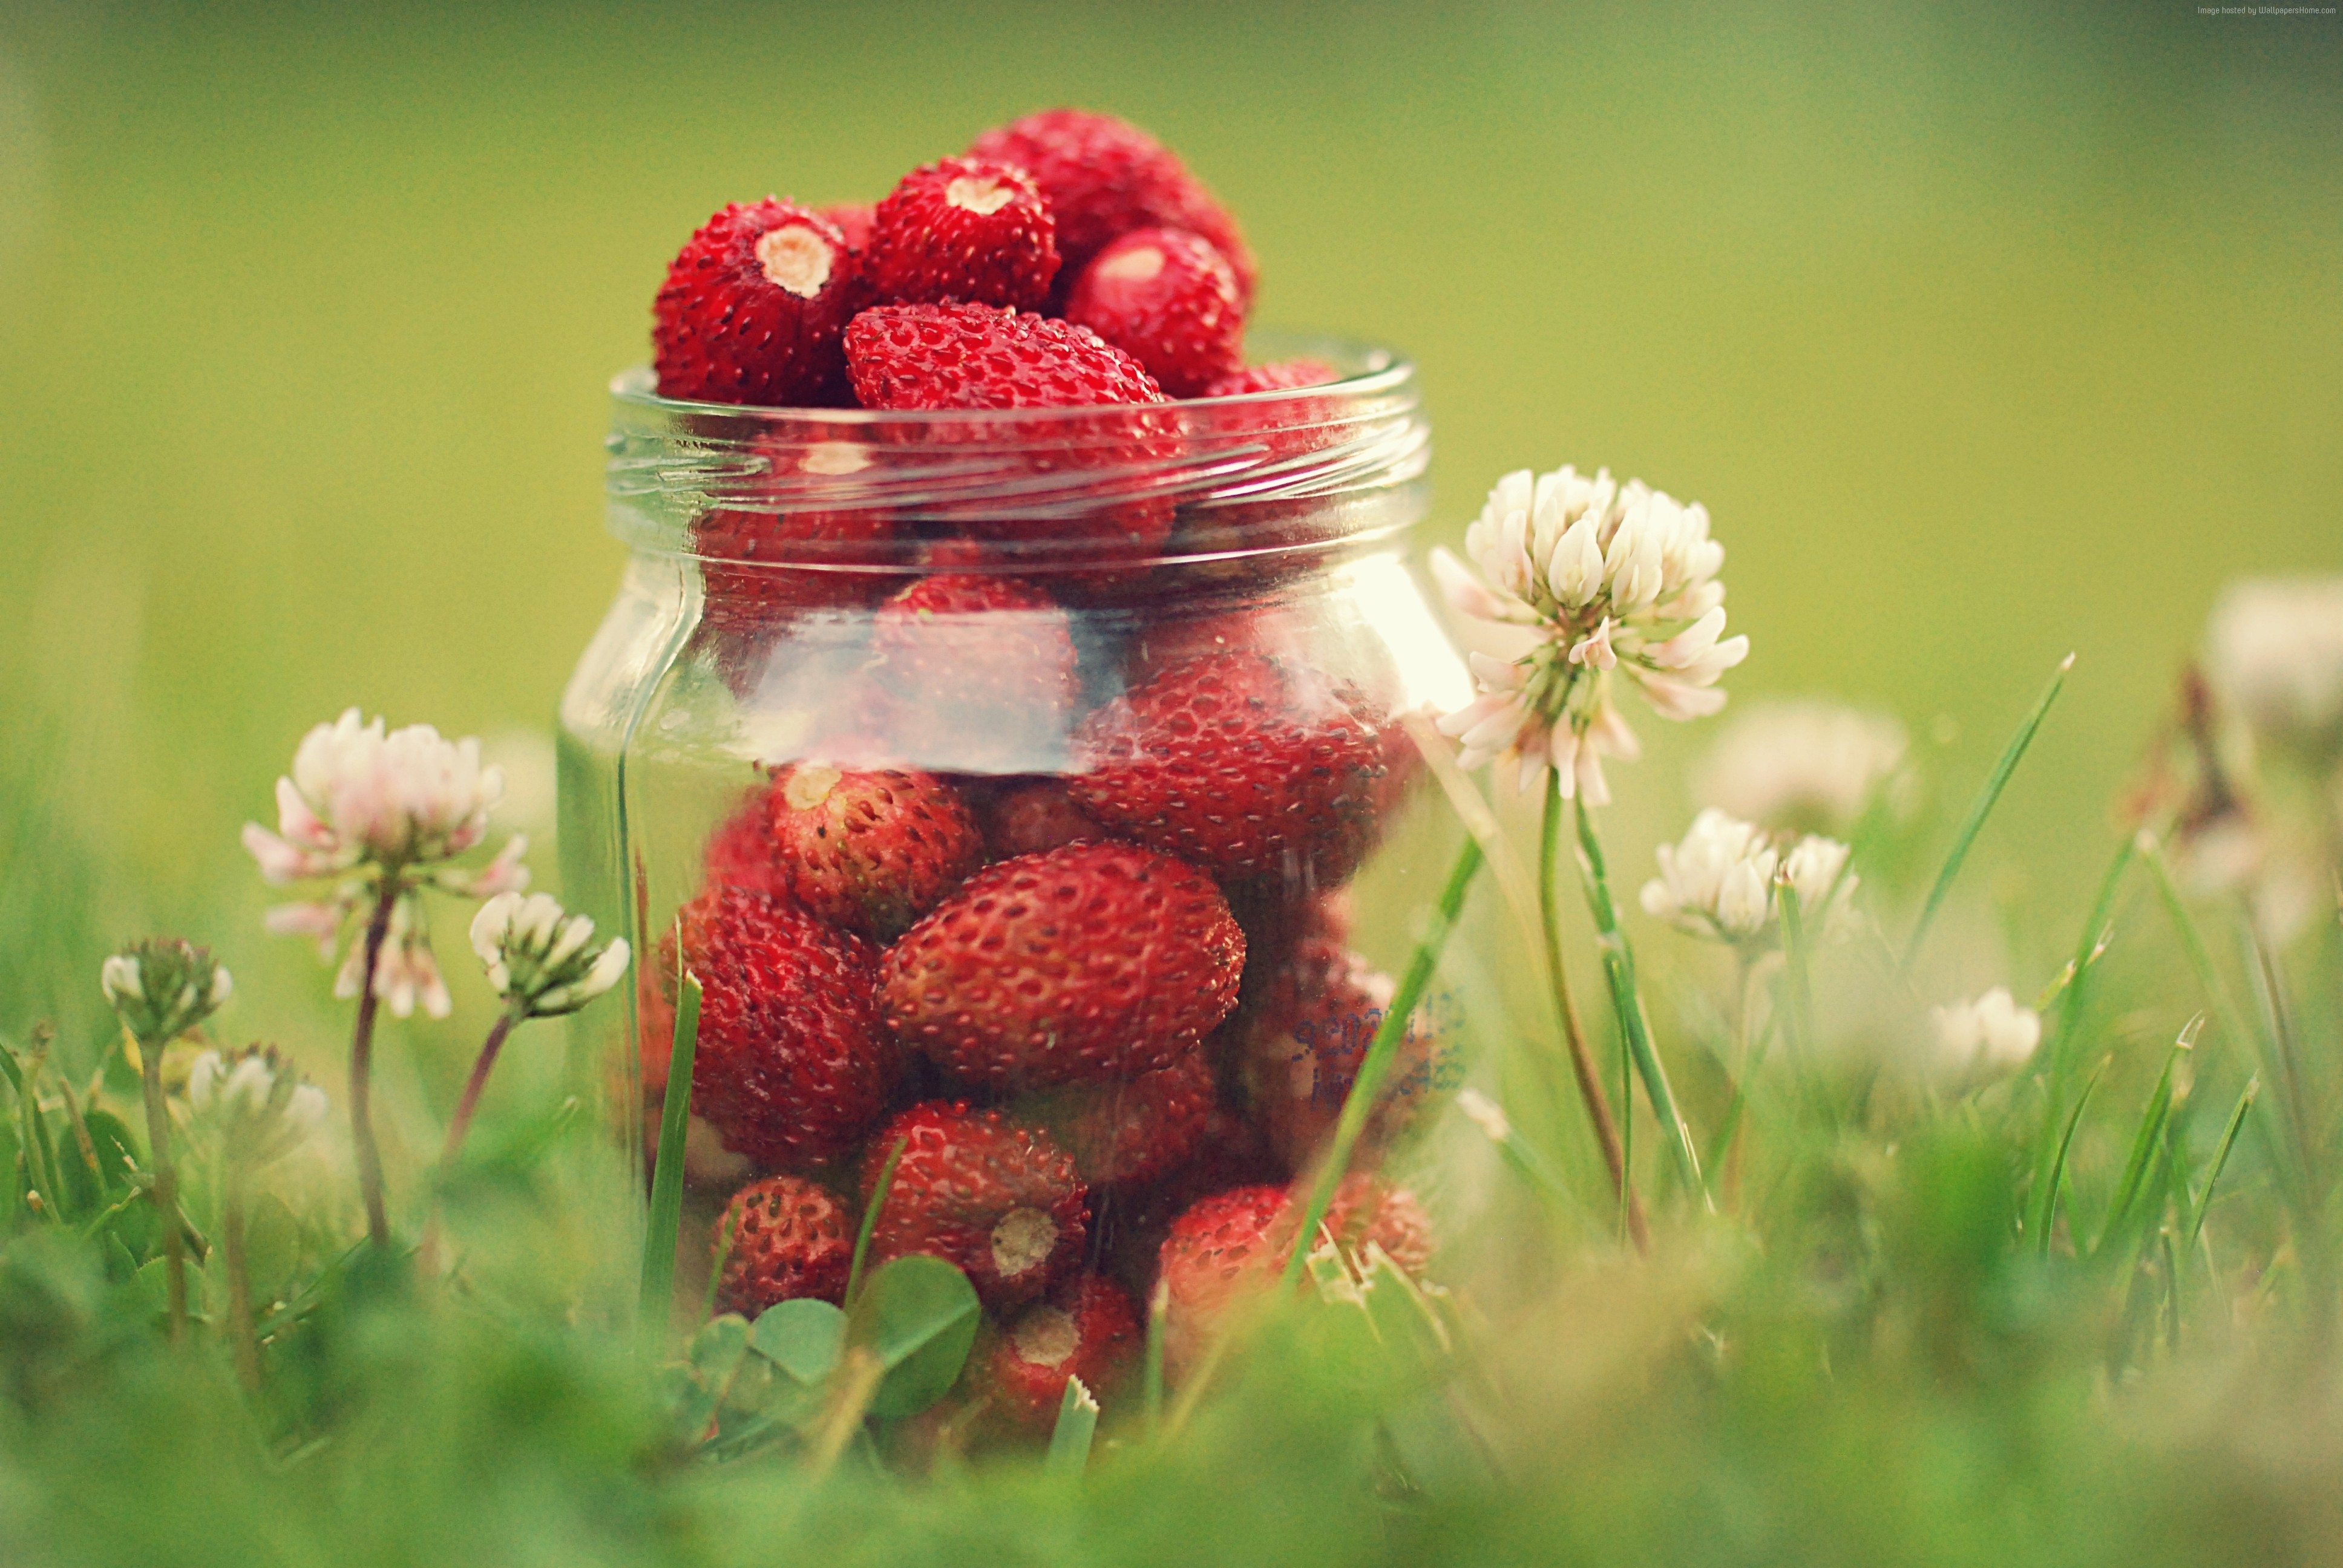 #greens, #strawberries, #flowers, #bokeh, #dandelions. Food